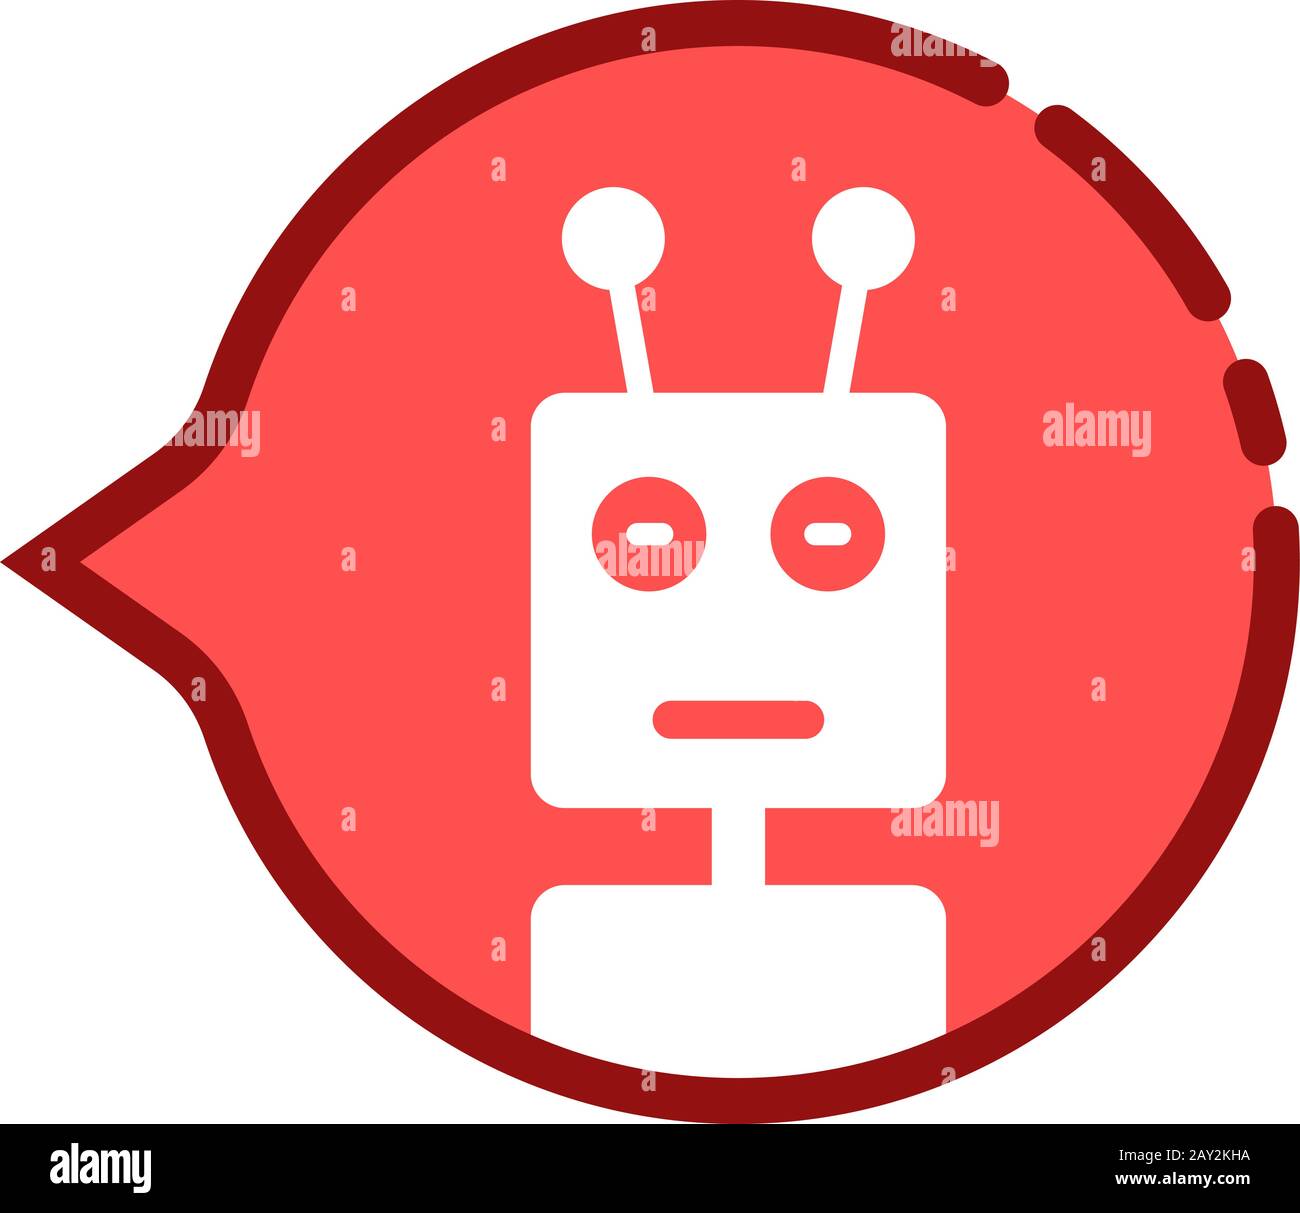 bulle de discours rouge de dessin animé avec chat bot Illustration de Vecteur